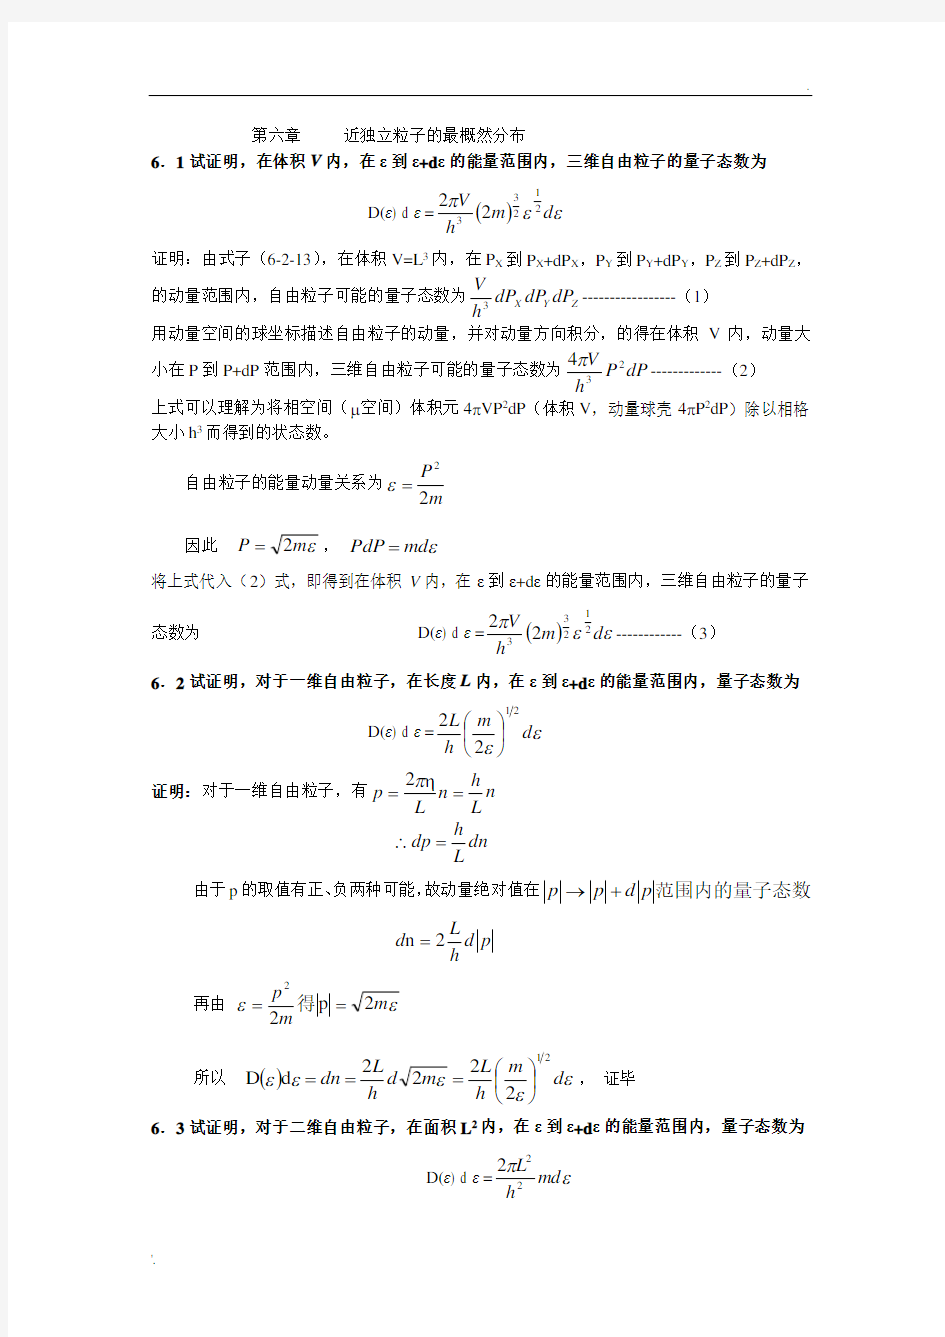 热力学统计物理  课后习题  答案 (3)